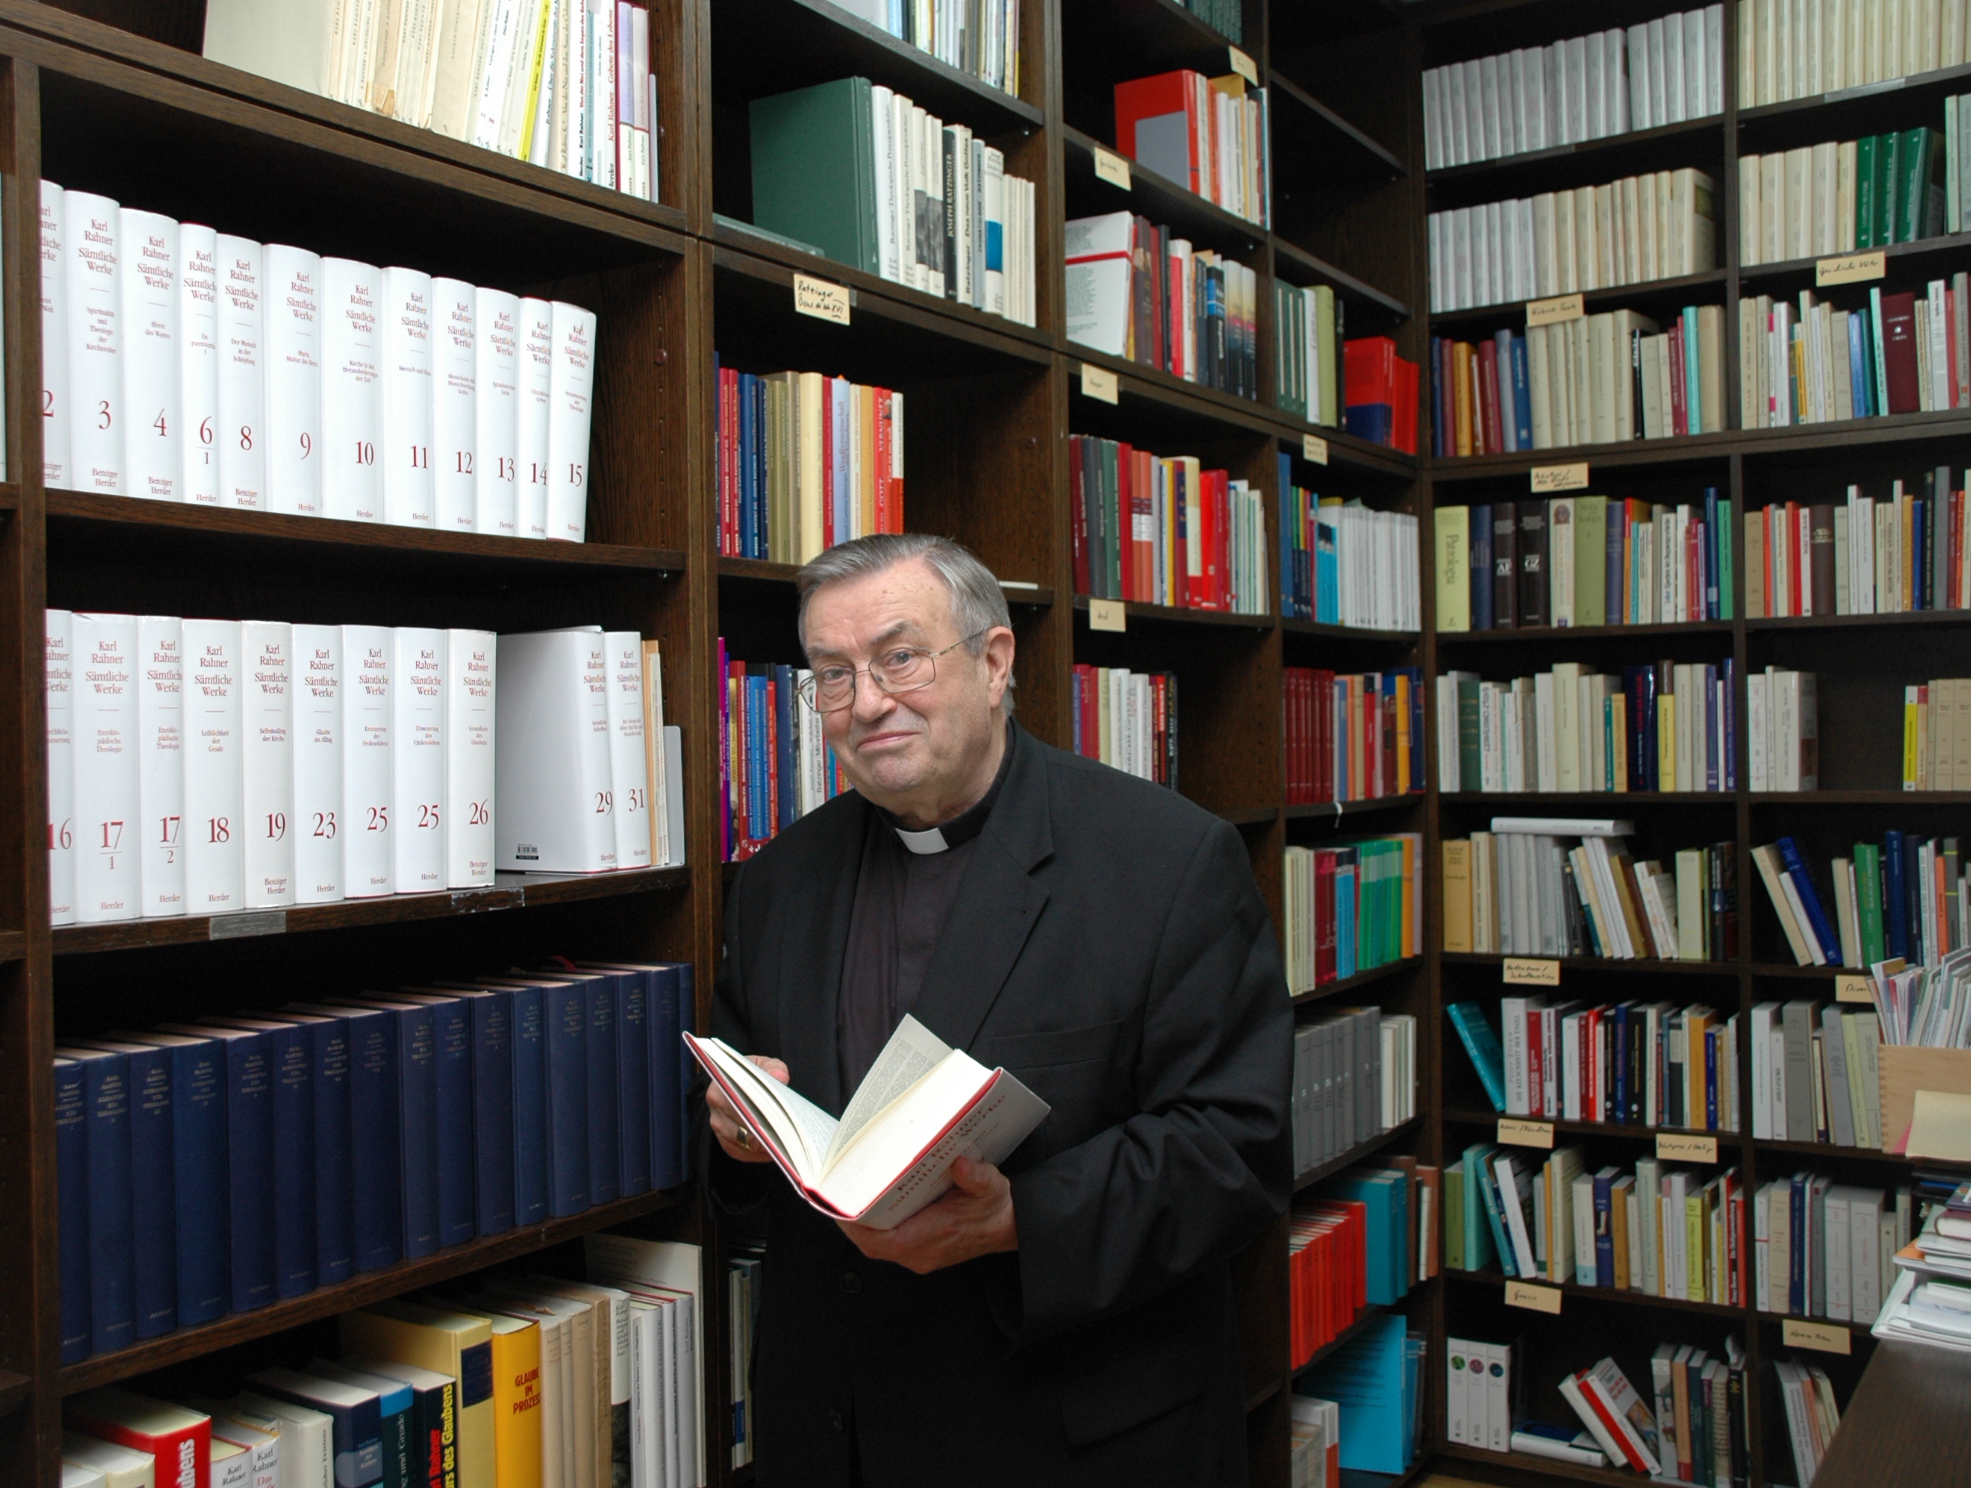 Kardinal Karl Lehmann in seiner Bibliothek im Mainzer Bischofshaus. Das Bild stammt aus dem Jahr 2008. (c) Bistum Mainz / Nichtweiß